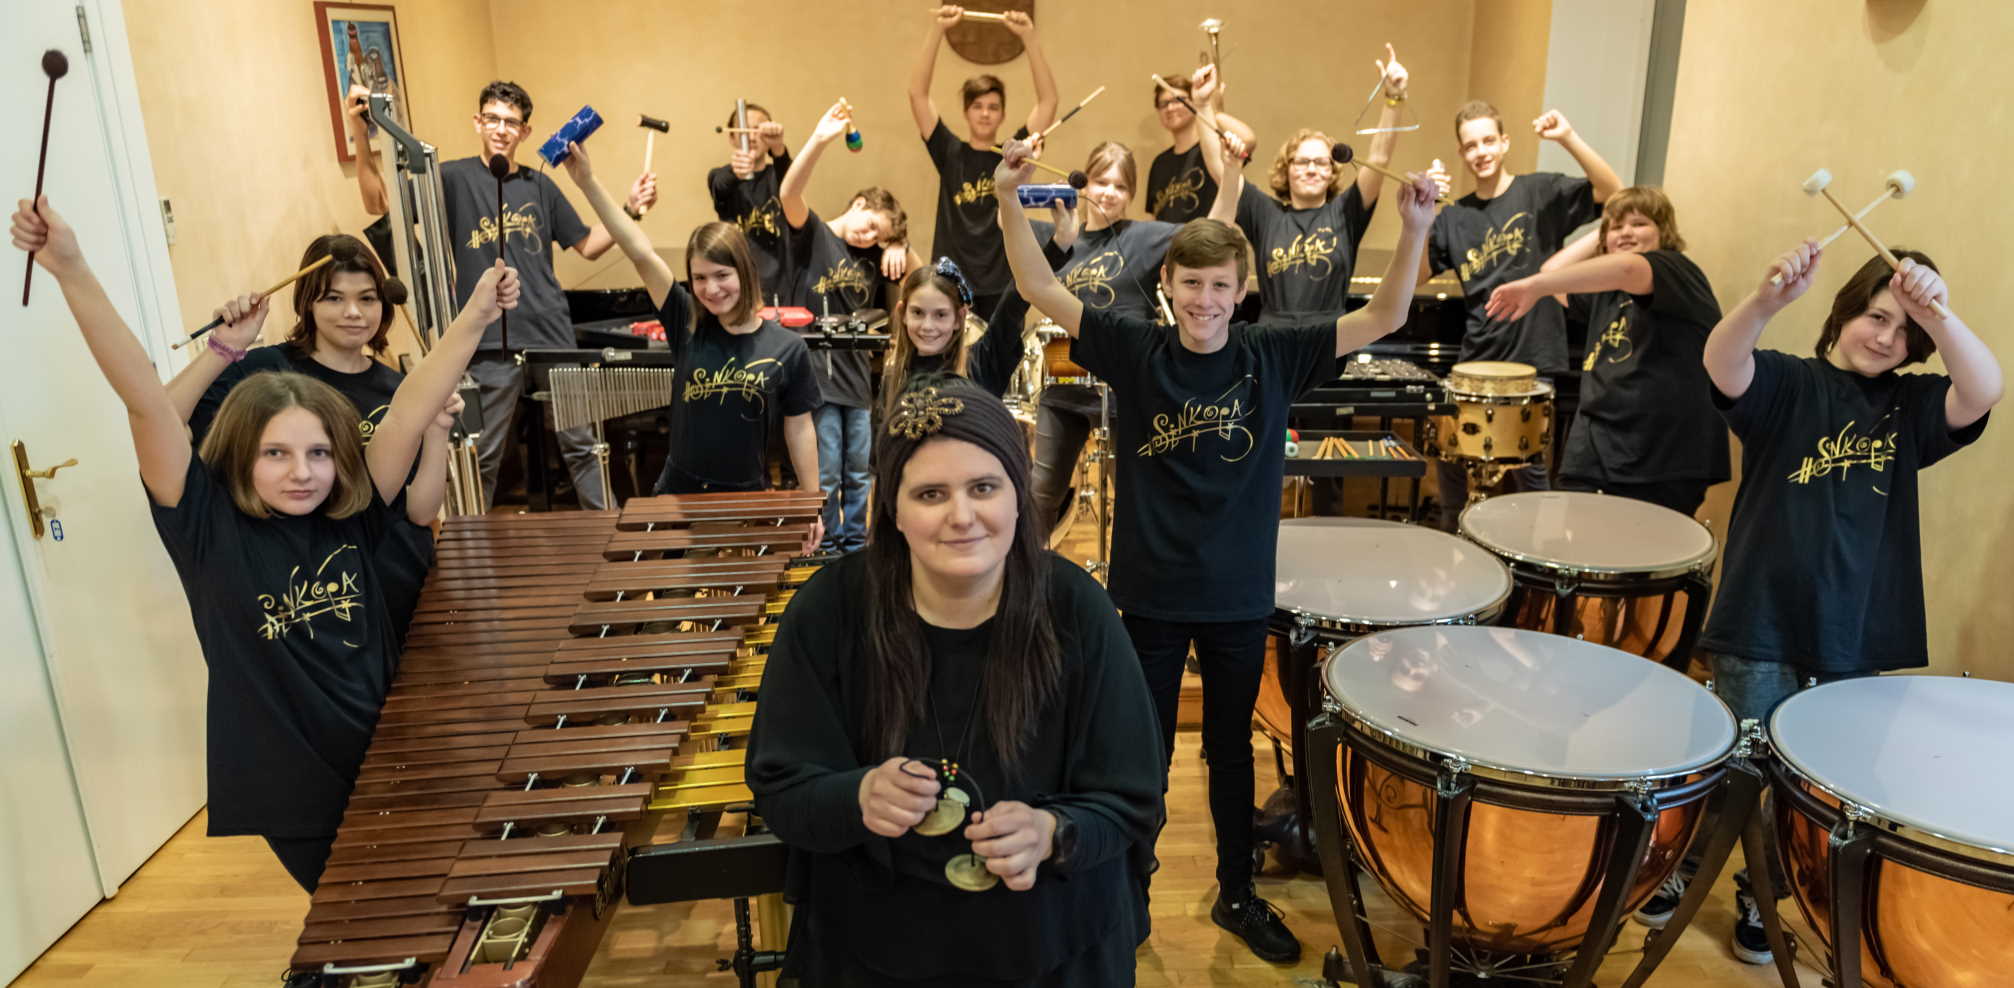 Jedinstveni koncert u „Zajcu“: Prvi udaraljkaški koncert u povijesti Rijeke, izvode ga Percussion team HNK i gosti